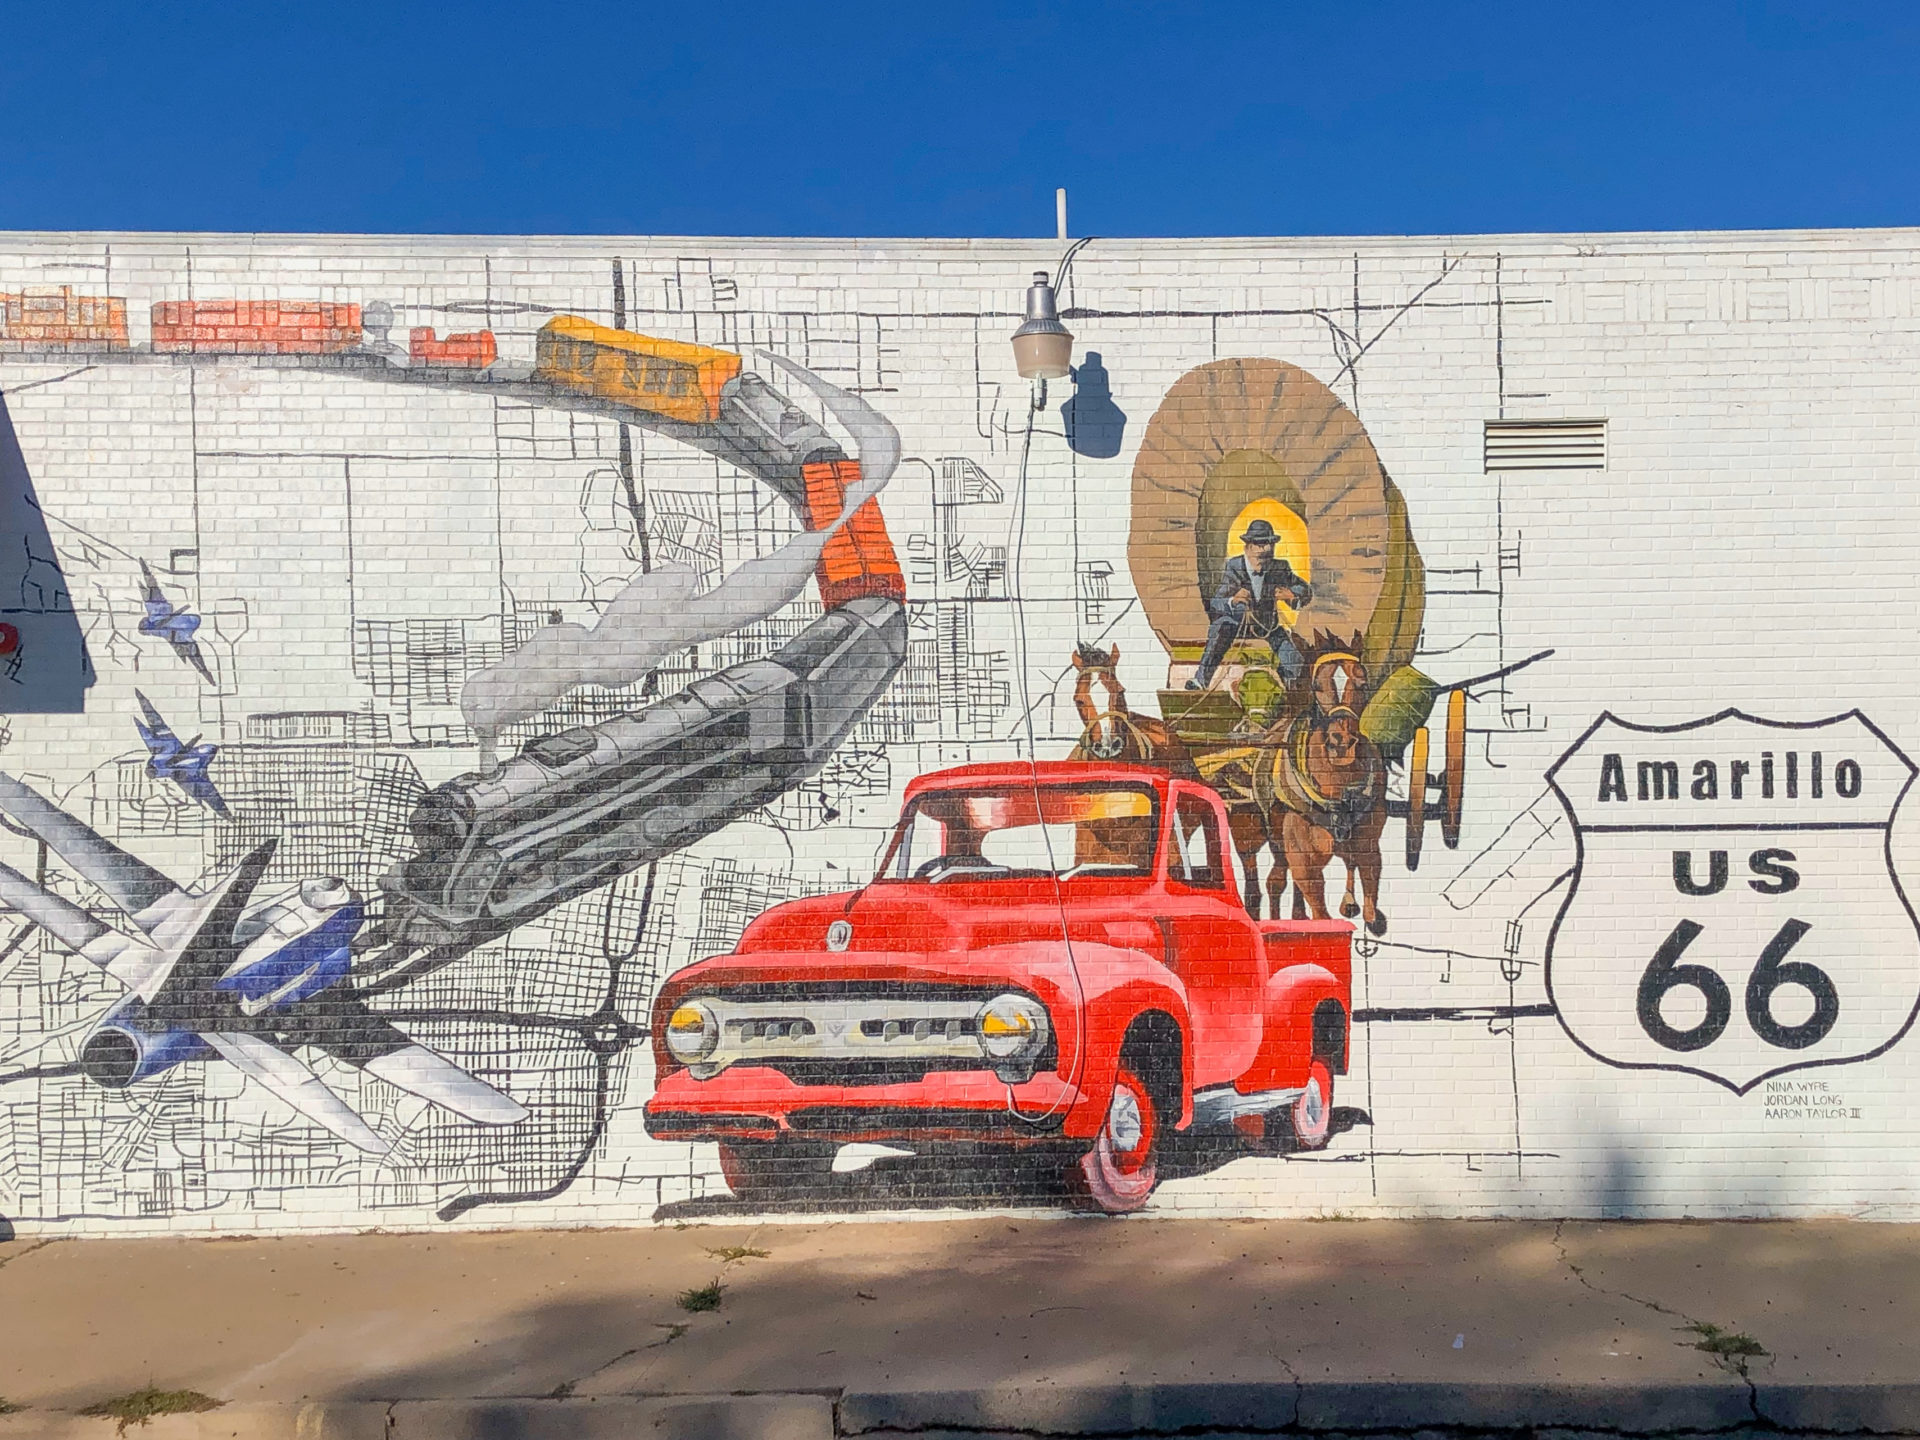 Wandgemälde im historischen Distrikt von Amarillo in Texas an der Route 66